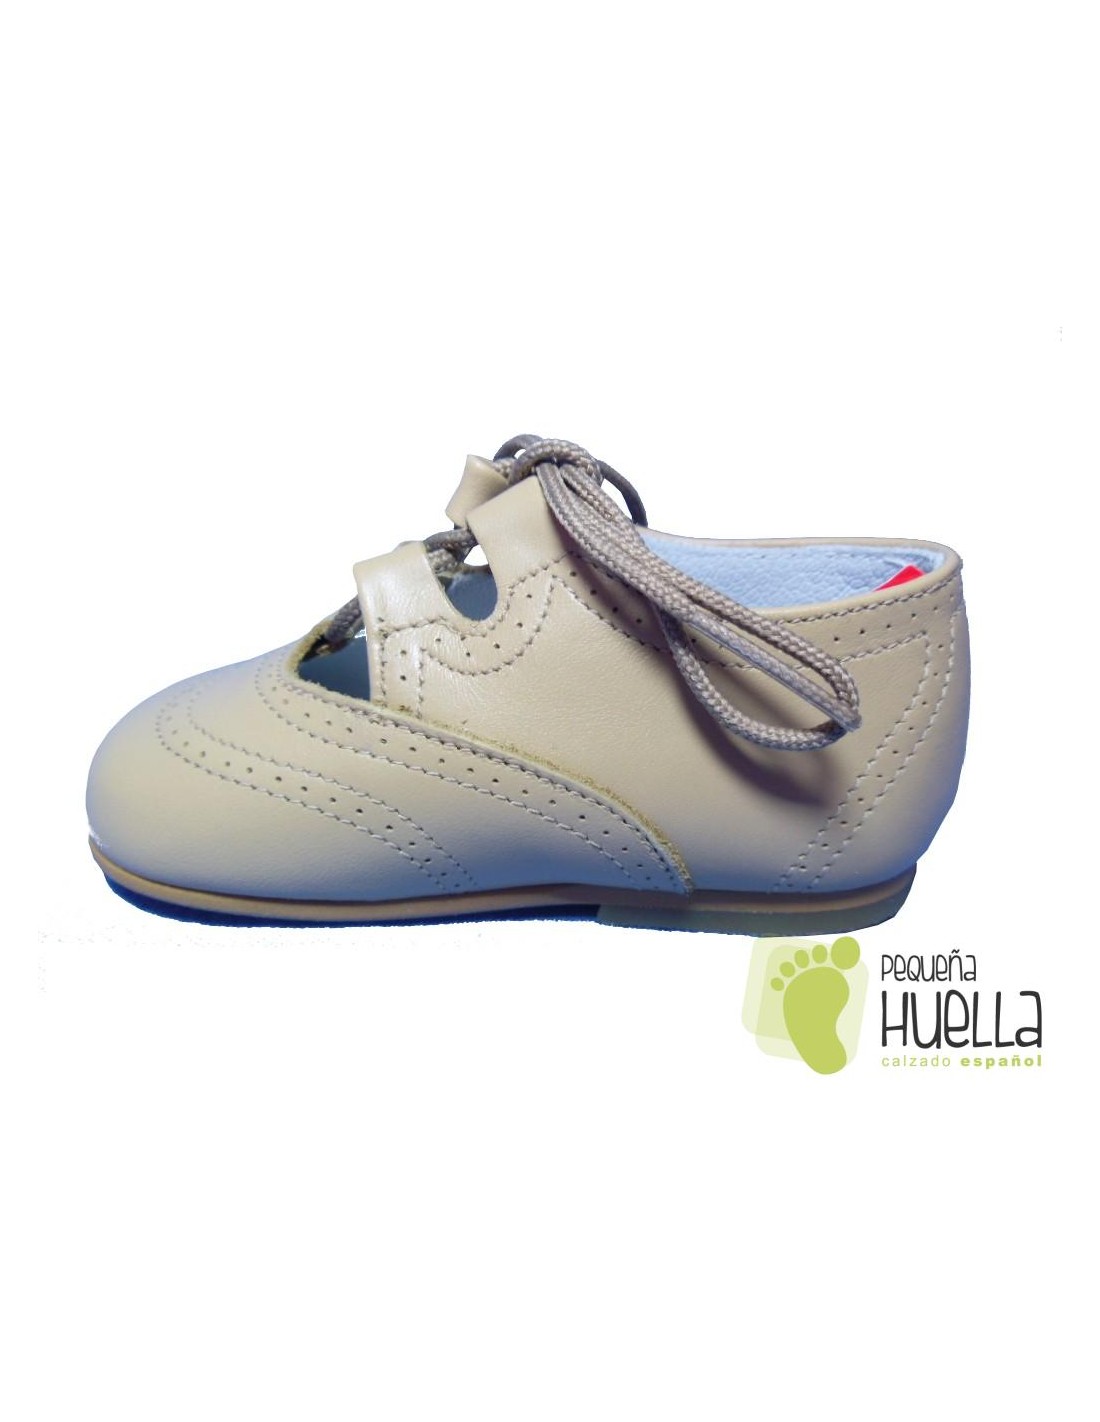 Comprar zapatos ingleses para bebé color camel Online